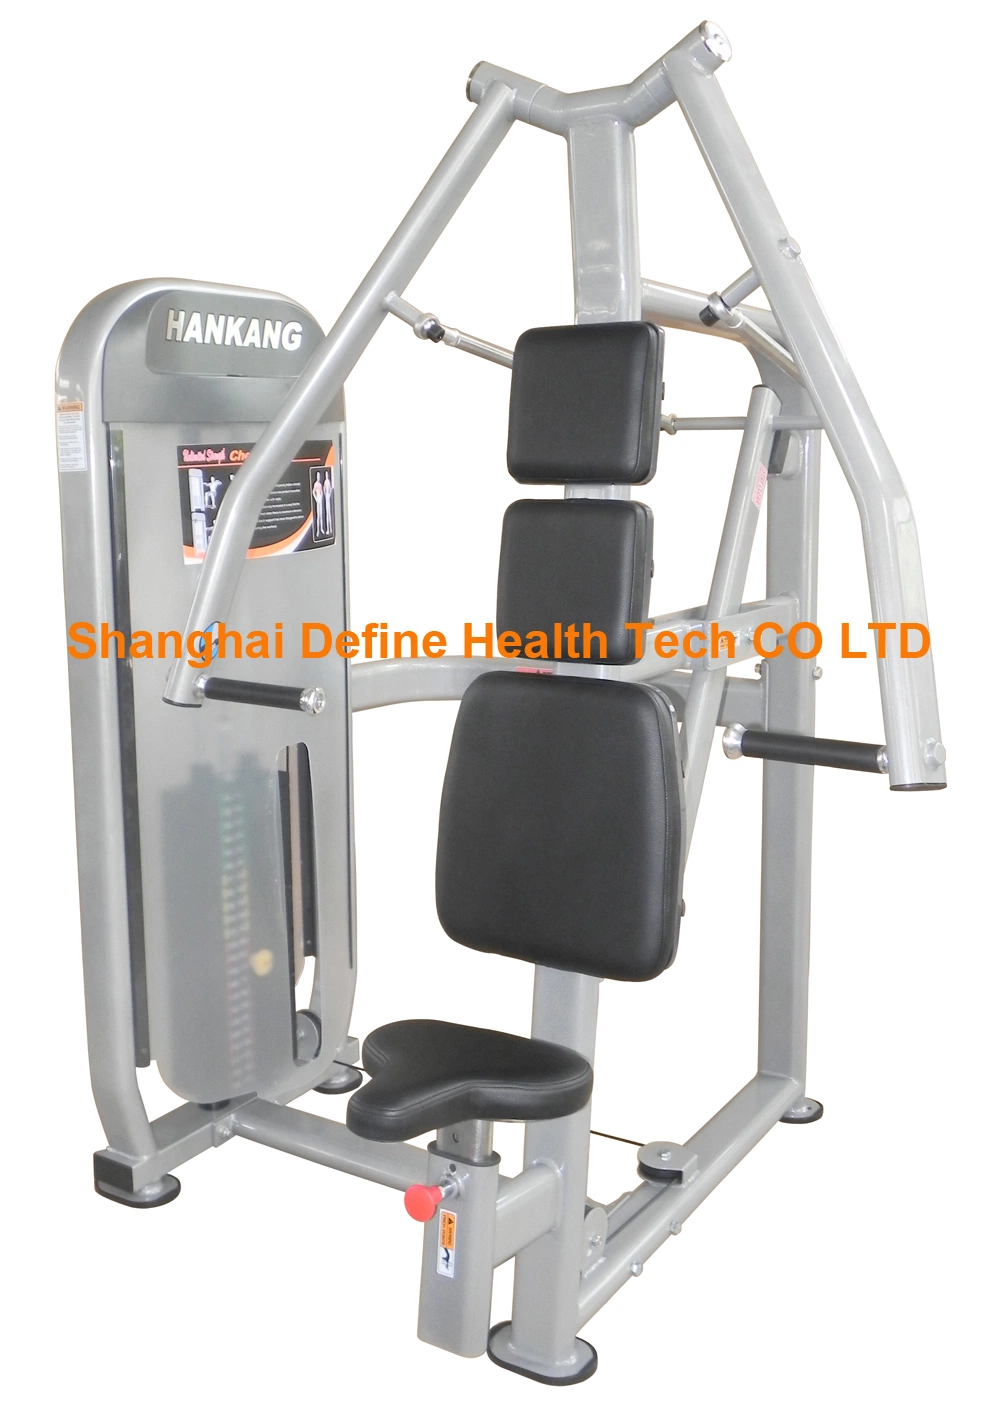 Nouvel équipement de fitness professionnel et appareil de gym, définir la force et définir Tech santé, équipement de gym dernier cri et machine de musculation, presse thoracique (HP-3001)